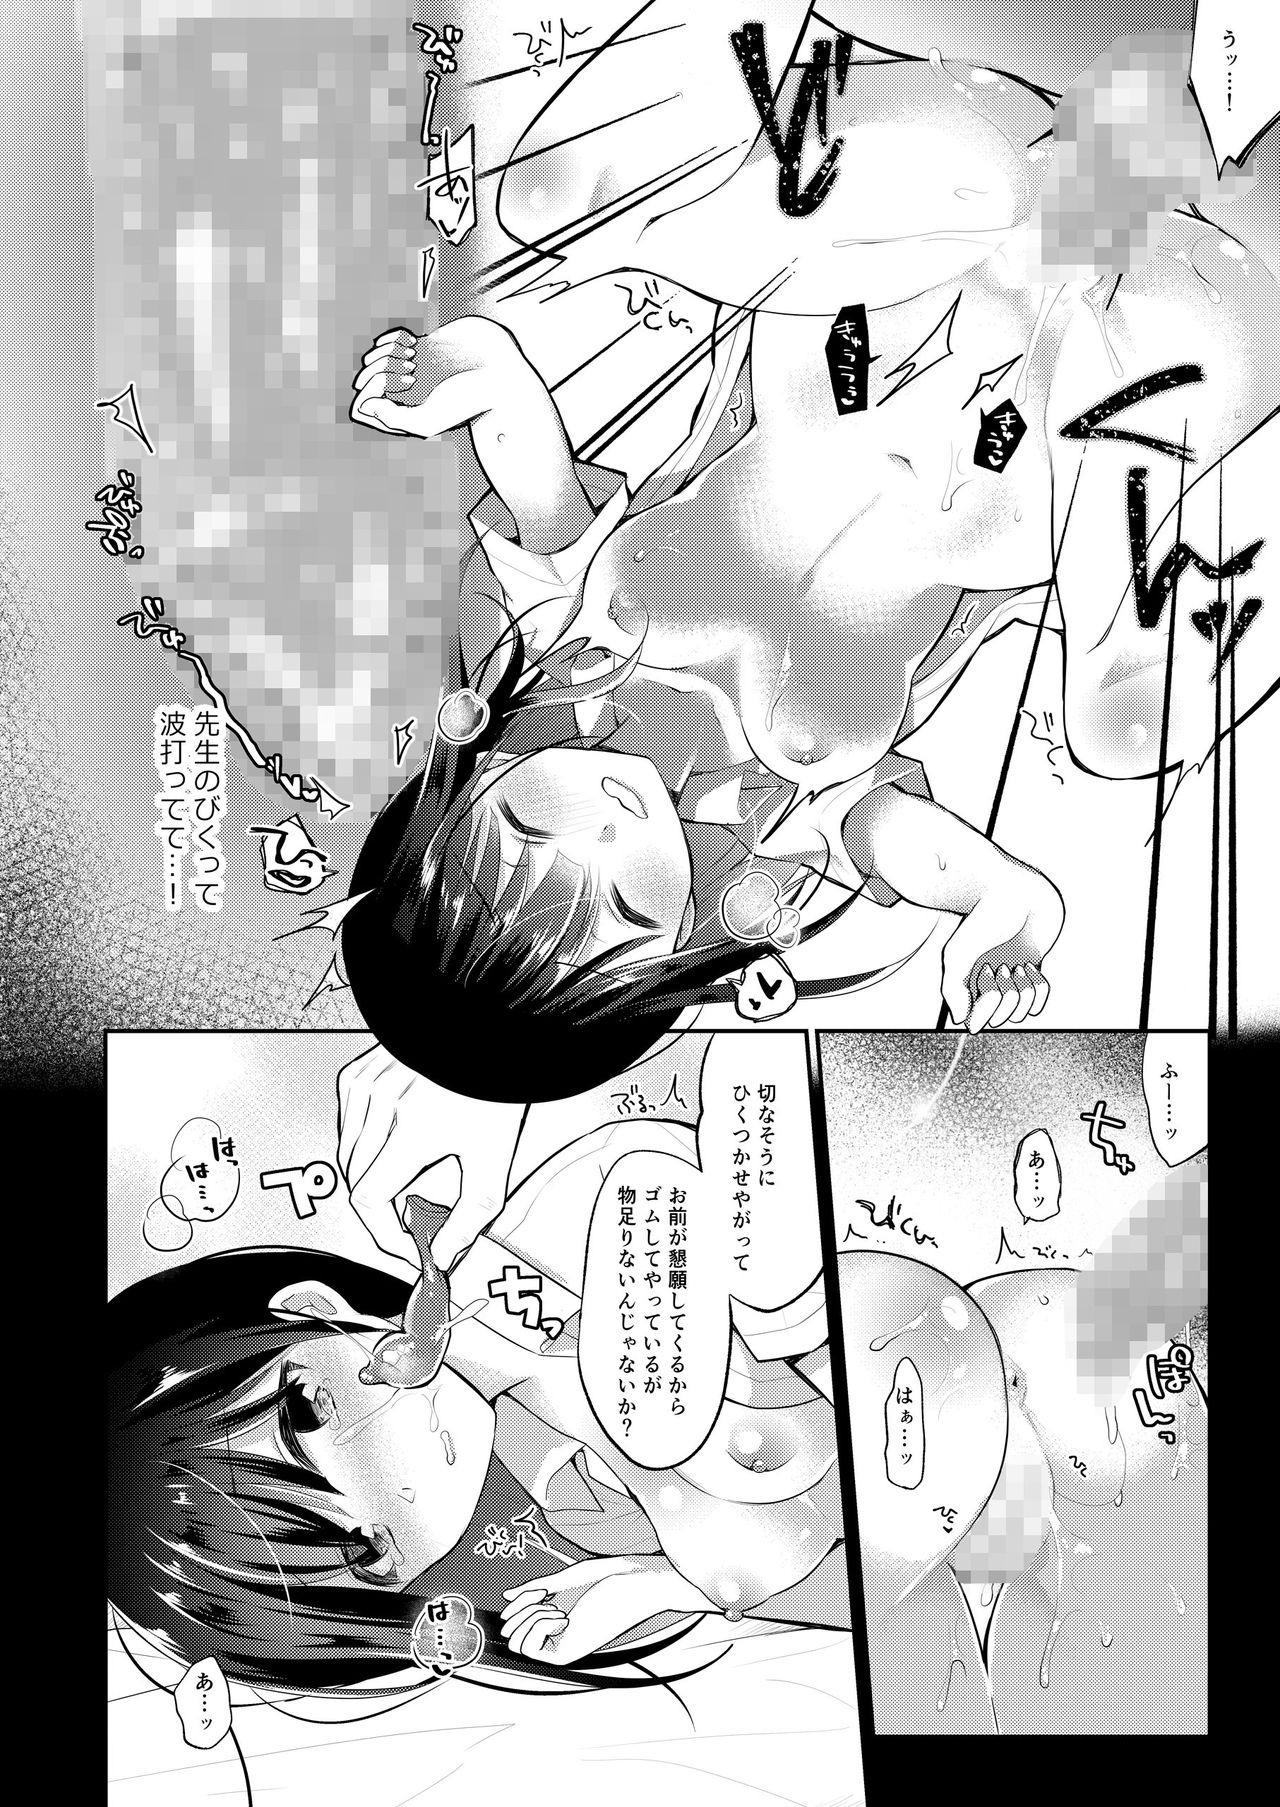 Stunning Boku no Kanojo wa Suisen ga Moraenai 2 - Original Phat - Page 3